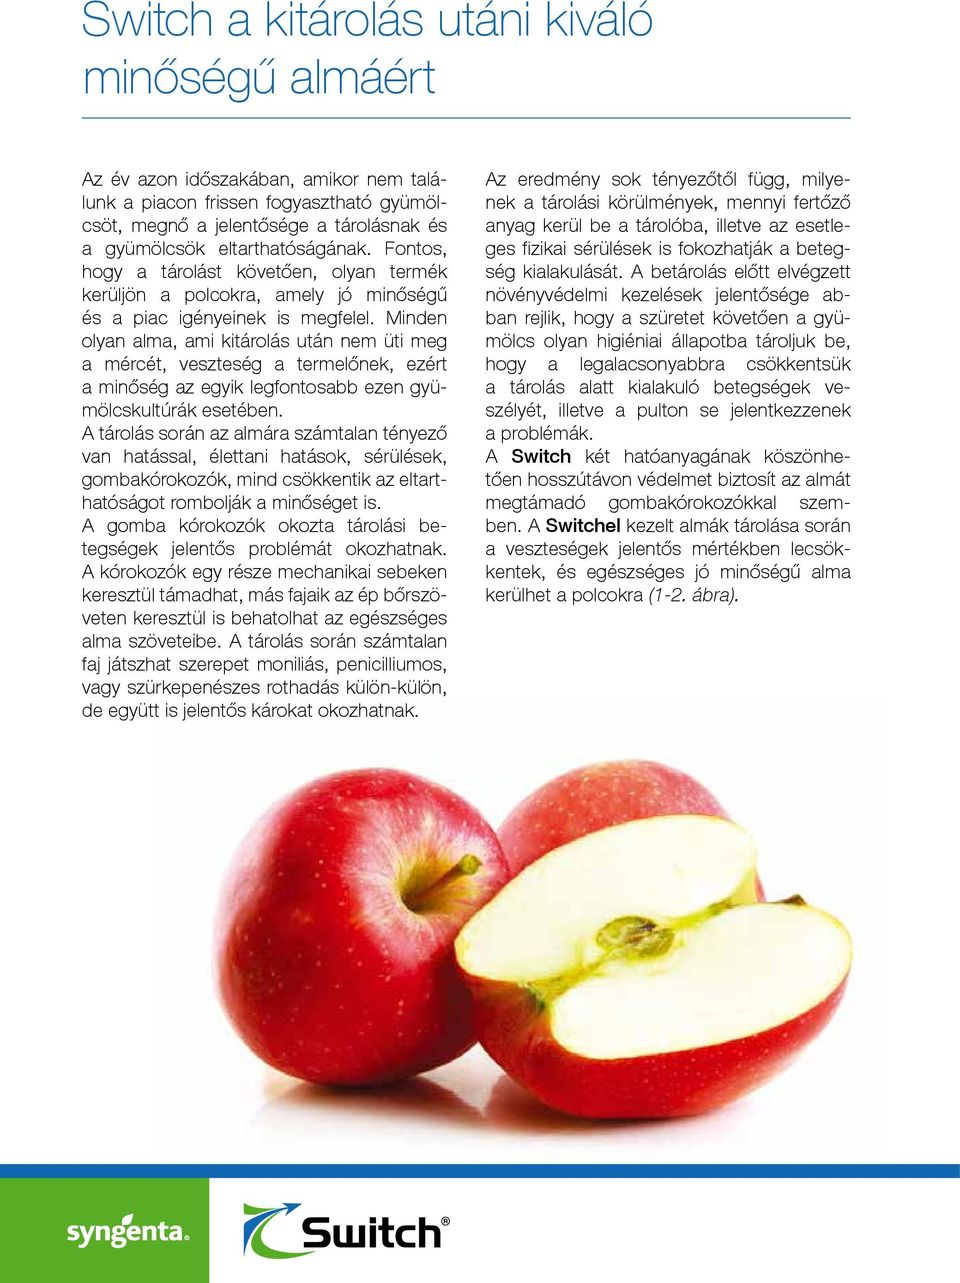 Minden olyan alma, ami kitárolás után nem üti meg a mércét, veszteség a termelőnek, ezért a minőség az egyik legfontosabb ezen gyümölcskultúrák esetében.